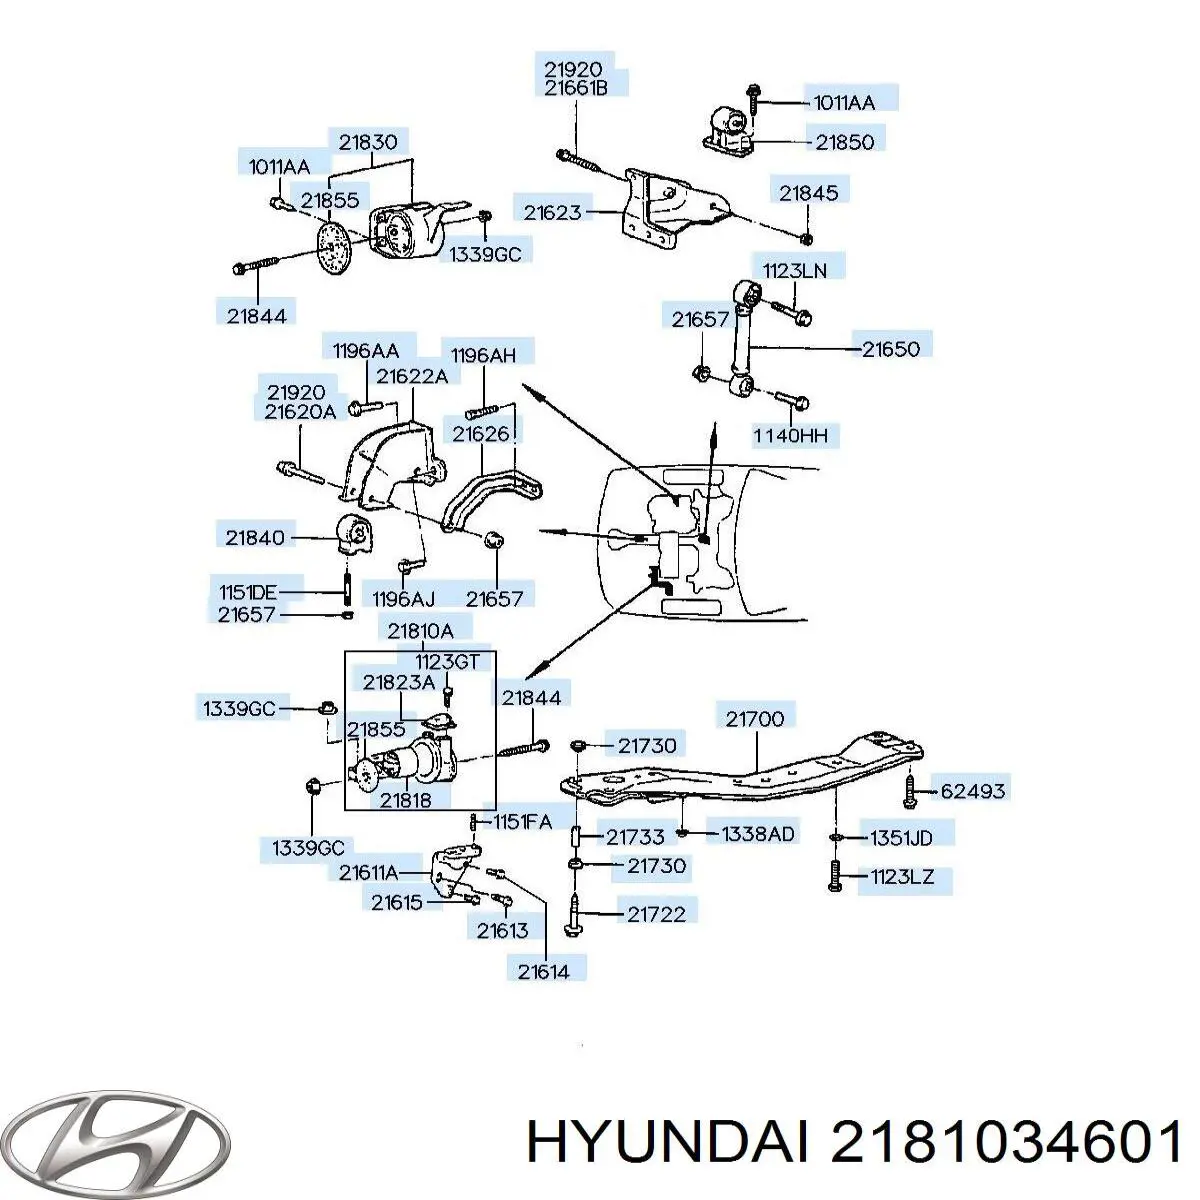 Подушка (опора) двигуна, ліва Hyundai Sonata (Хендай Соната)